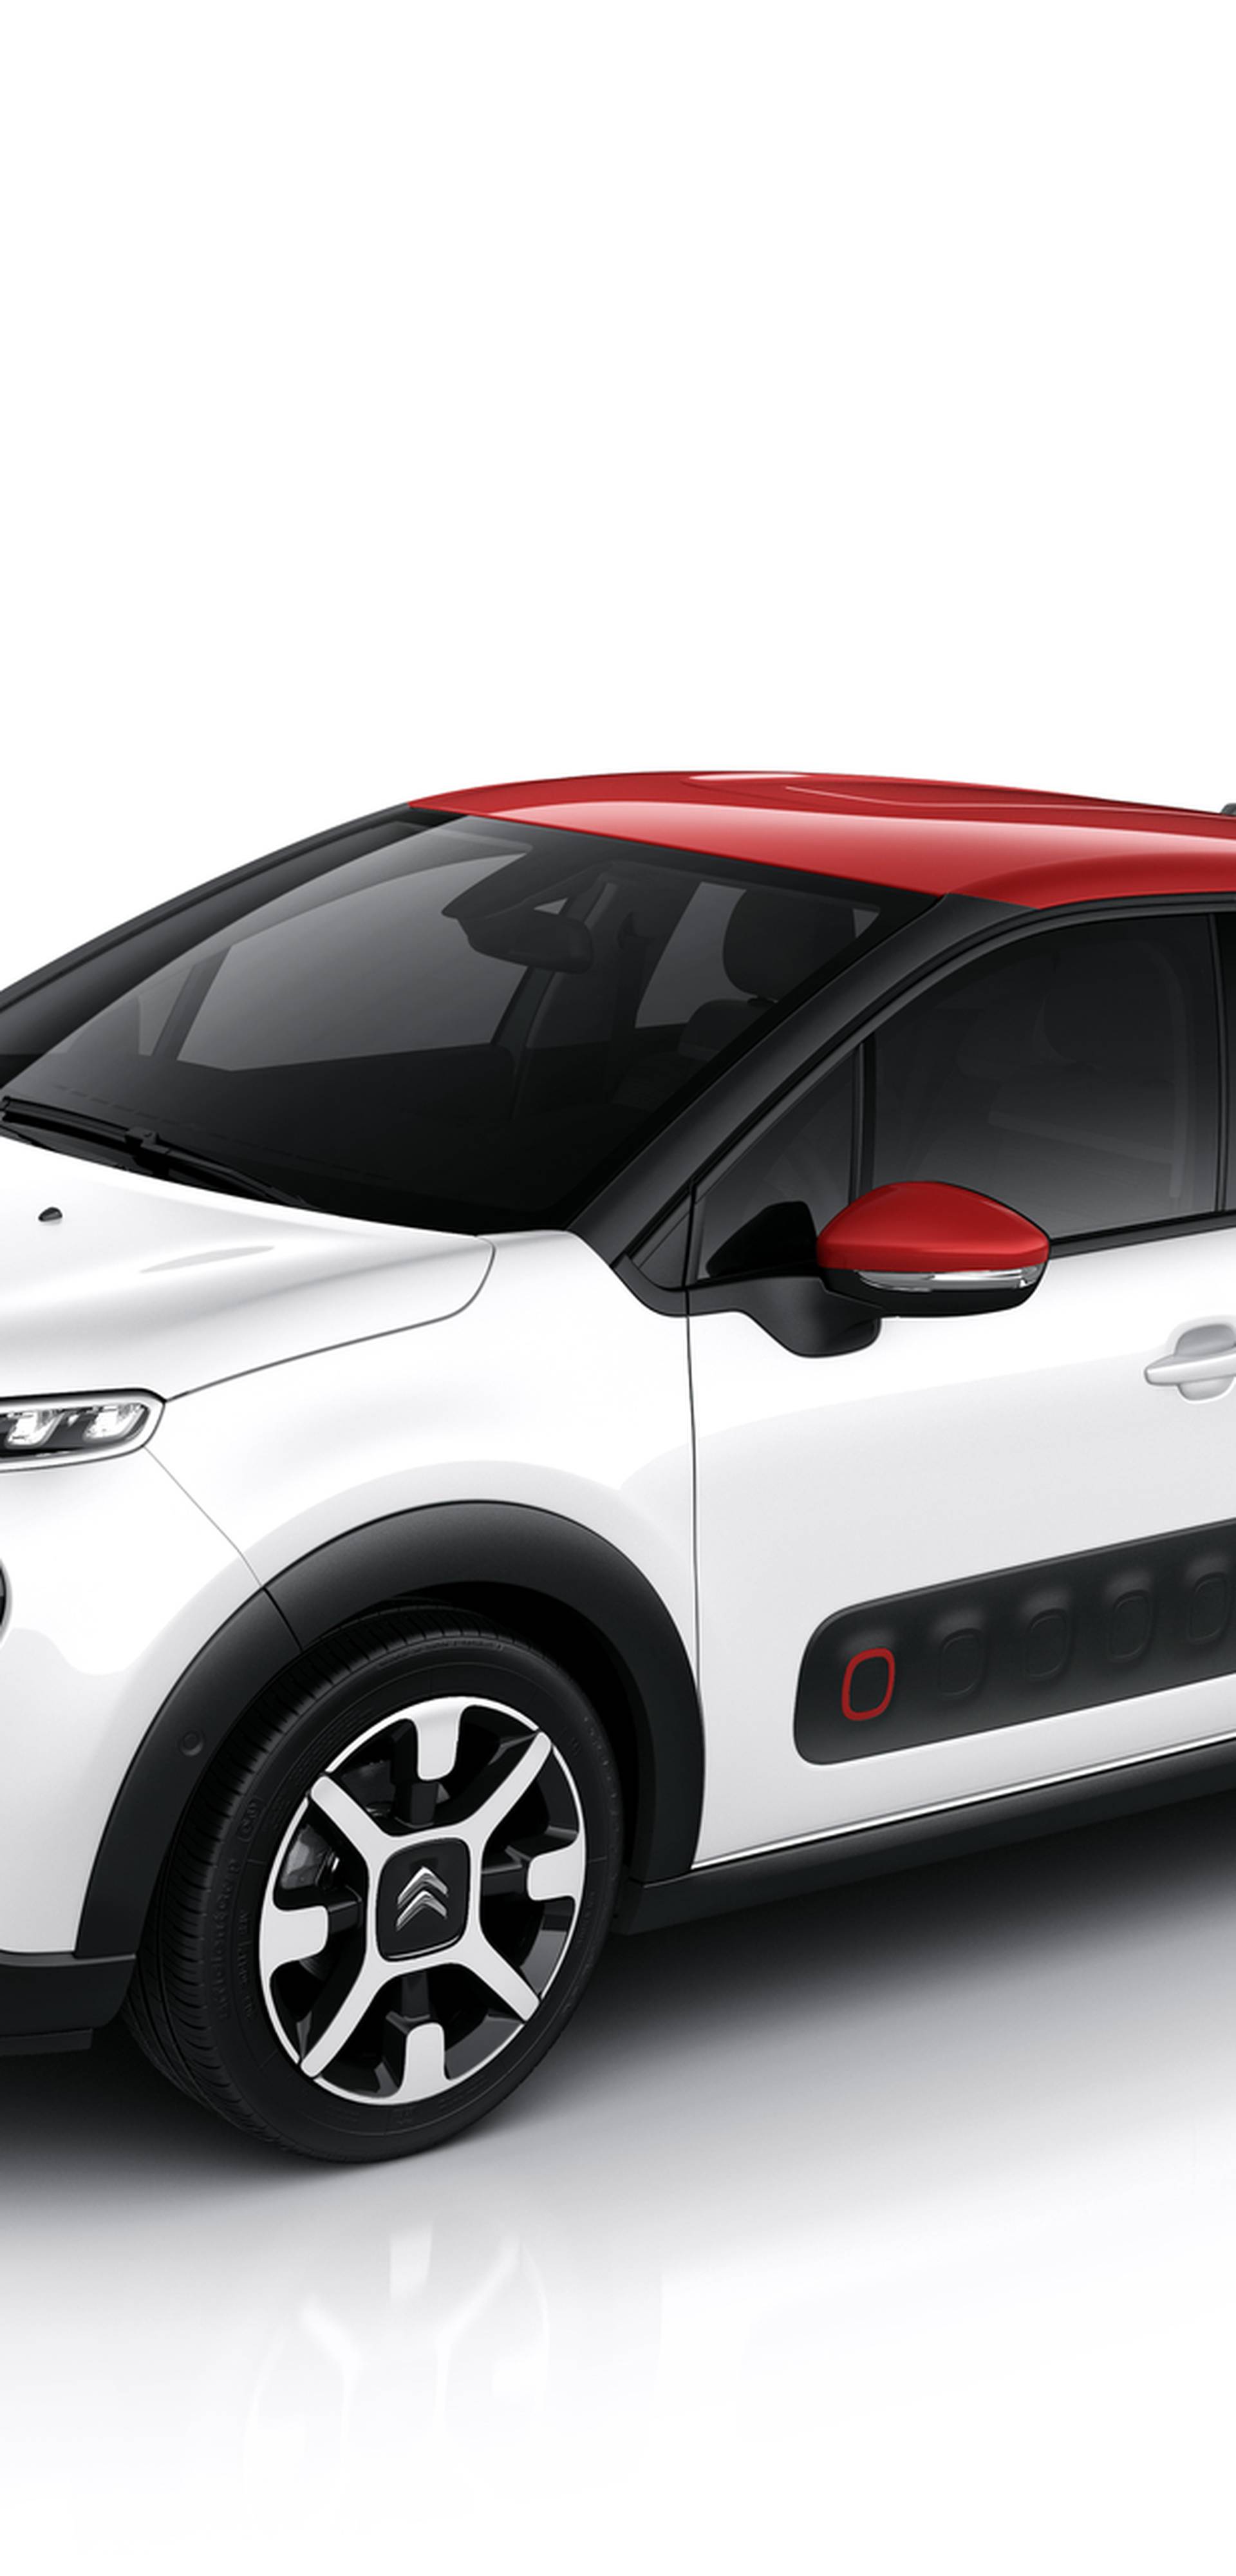 Citroën opet šokira: C3 je auto koji ima dušu i puno osobnosti